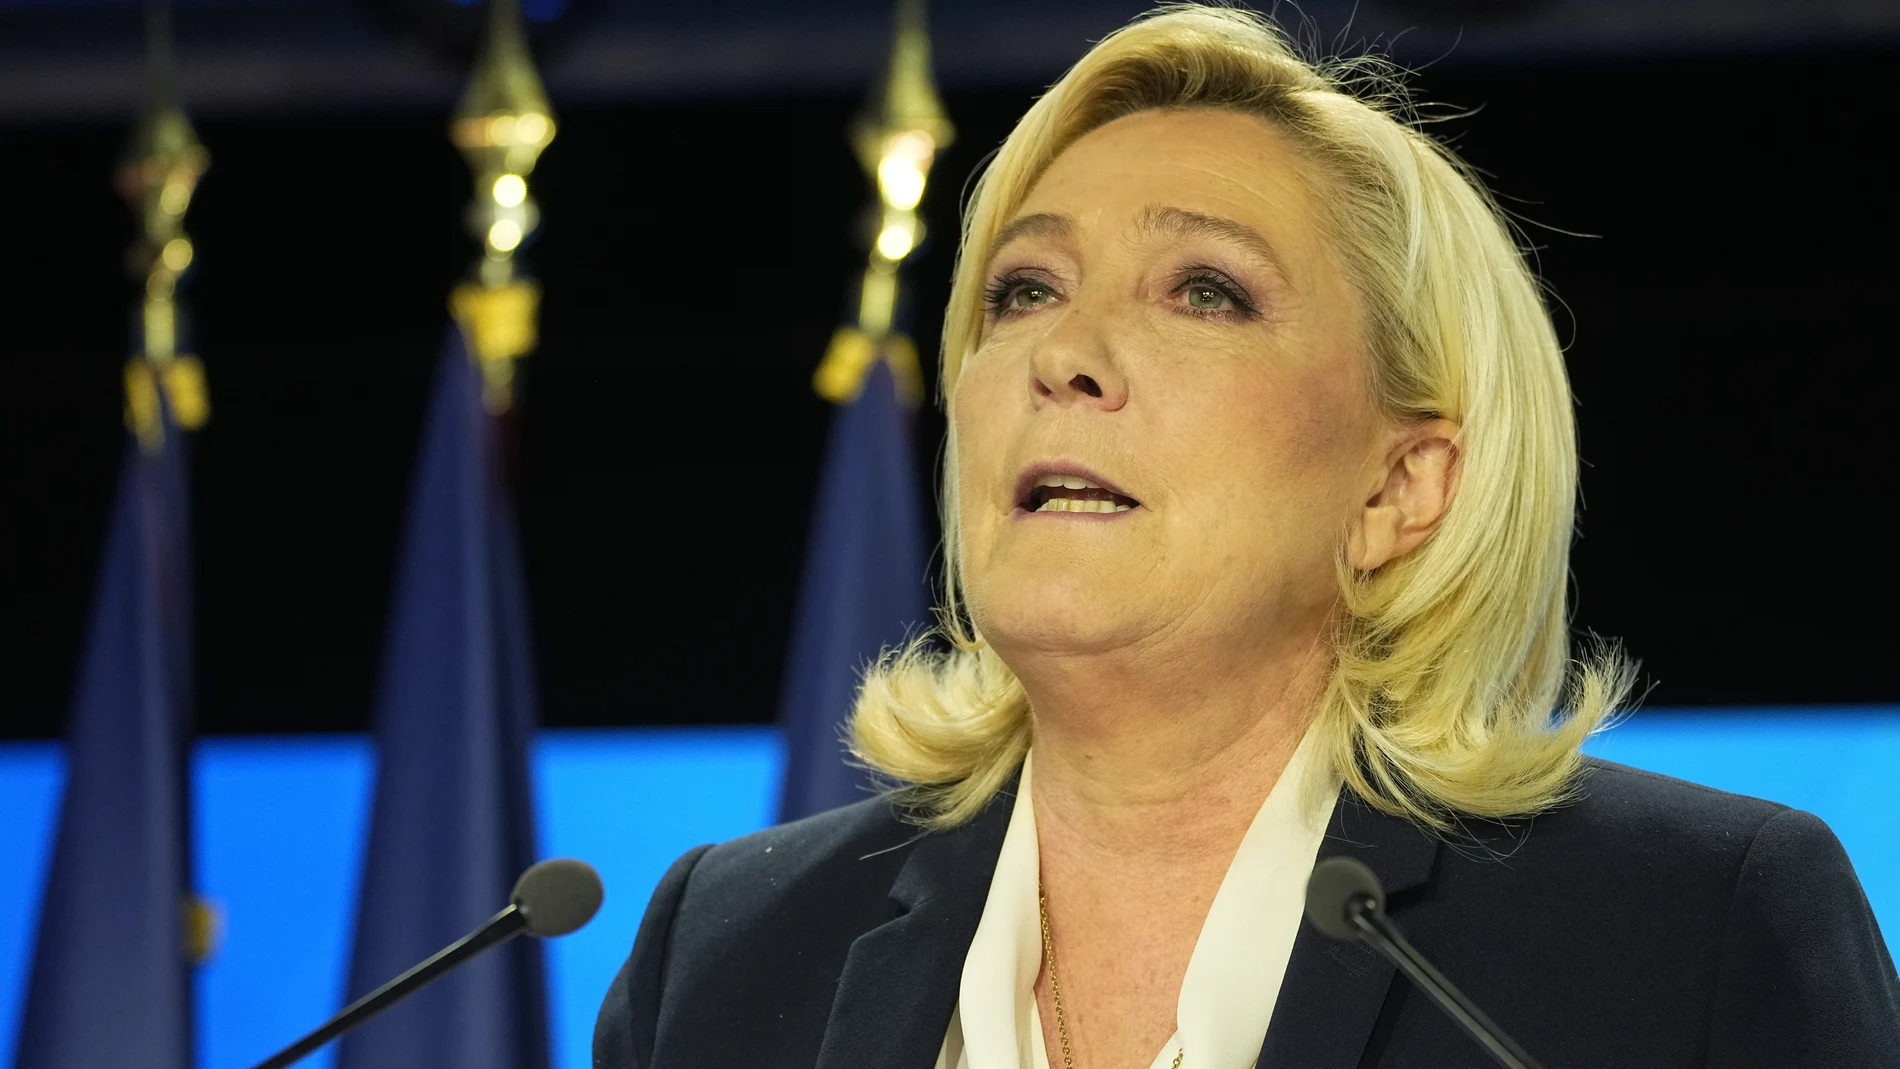 La líder de Reagrupación Nacional, Marine Le Pen, competirá por un escaño en su feudo de Pas de Calais